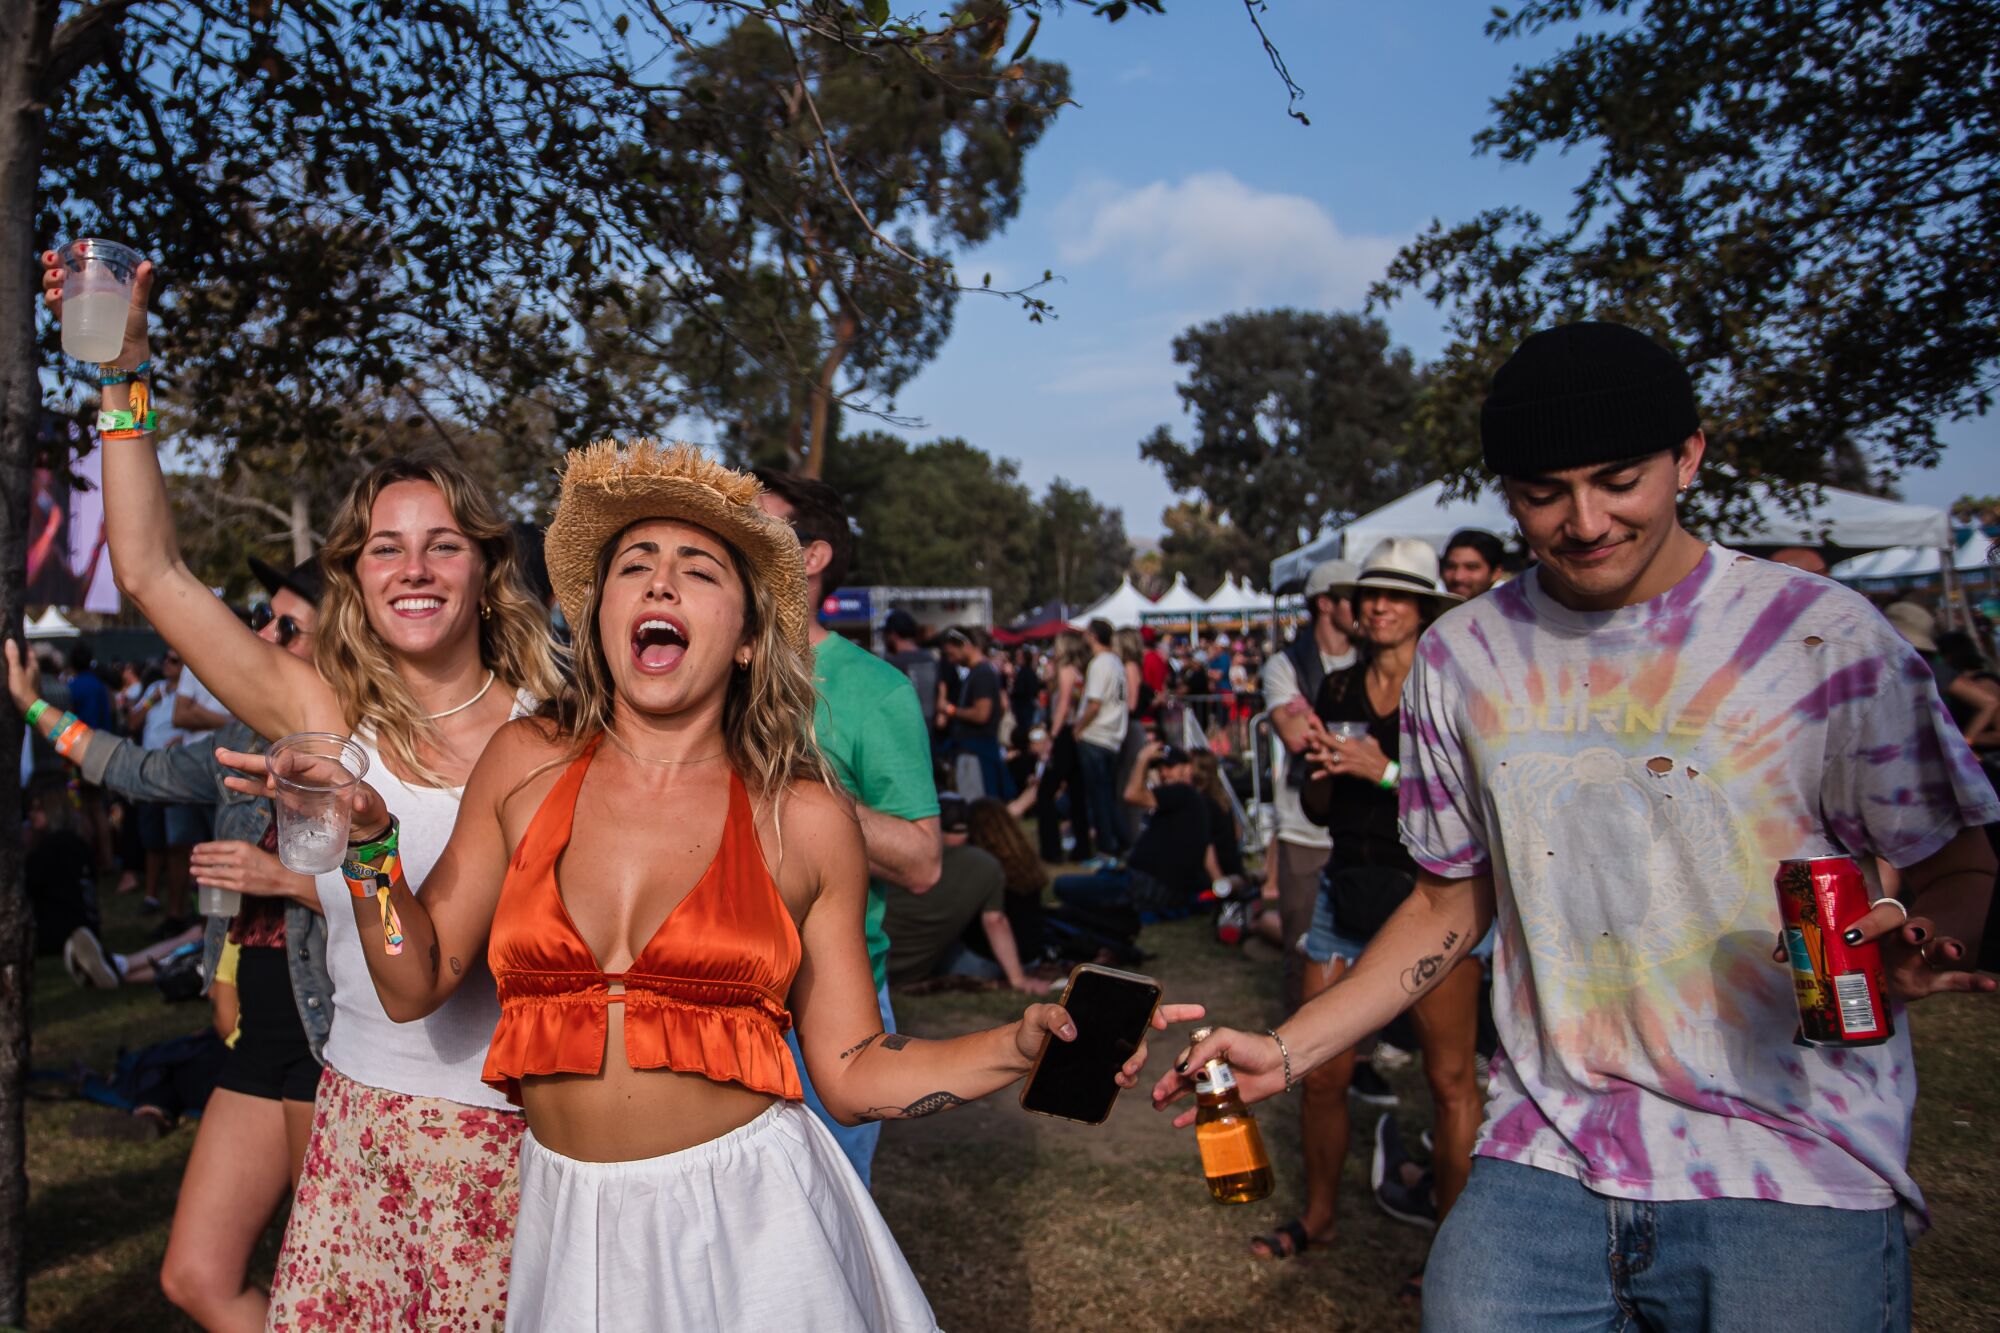 People dance during the Ohana Festival on September 25, 2021 in Dana Point, California.